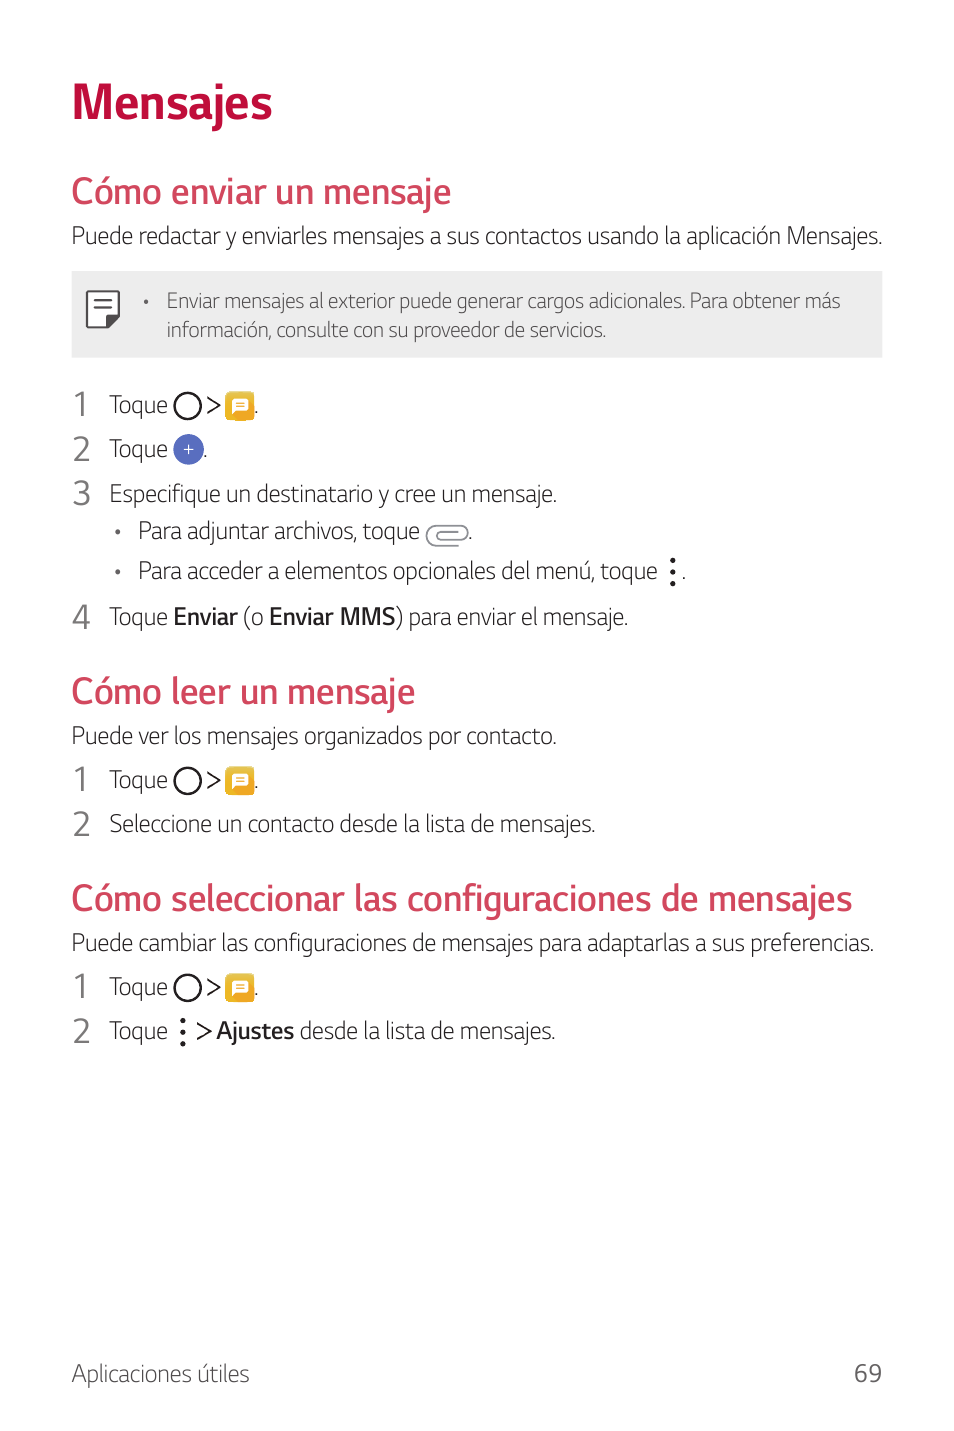 Mensajes, Cómo enviar un mensaje, Cómo leer un mensaje | Cómo seleccionar las configuraciones de mensajes | LG G6 H872 Manual del usuario | Página 70 / 185